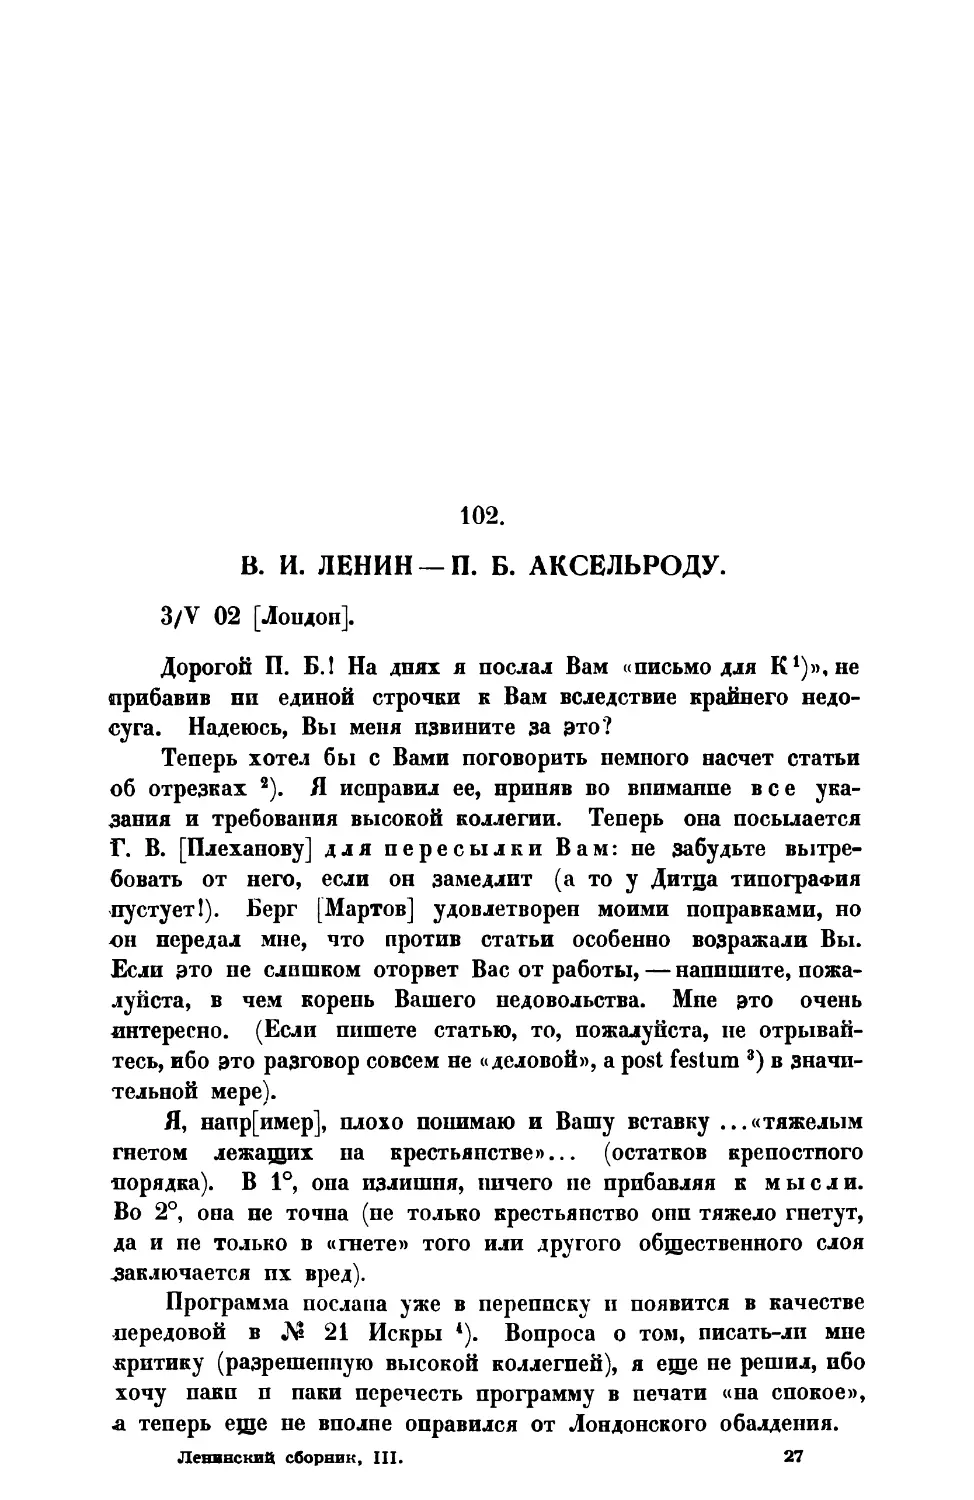 102. В. II. Ленин. — Письмо П. Б. Аксельроду от 3 V 1902 г.